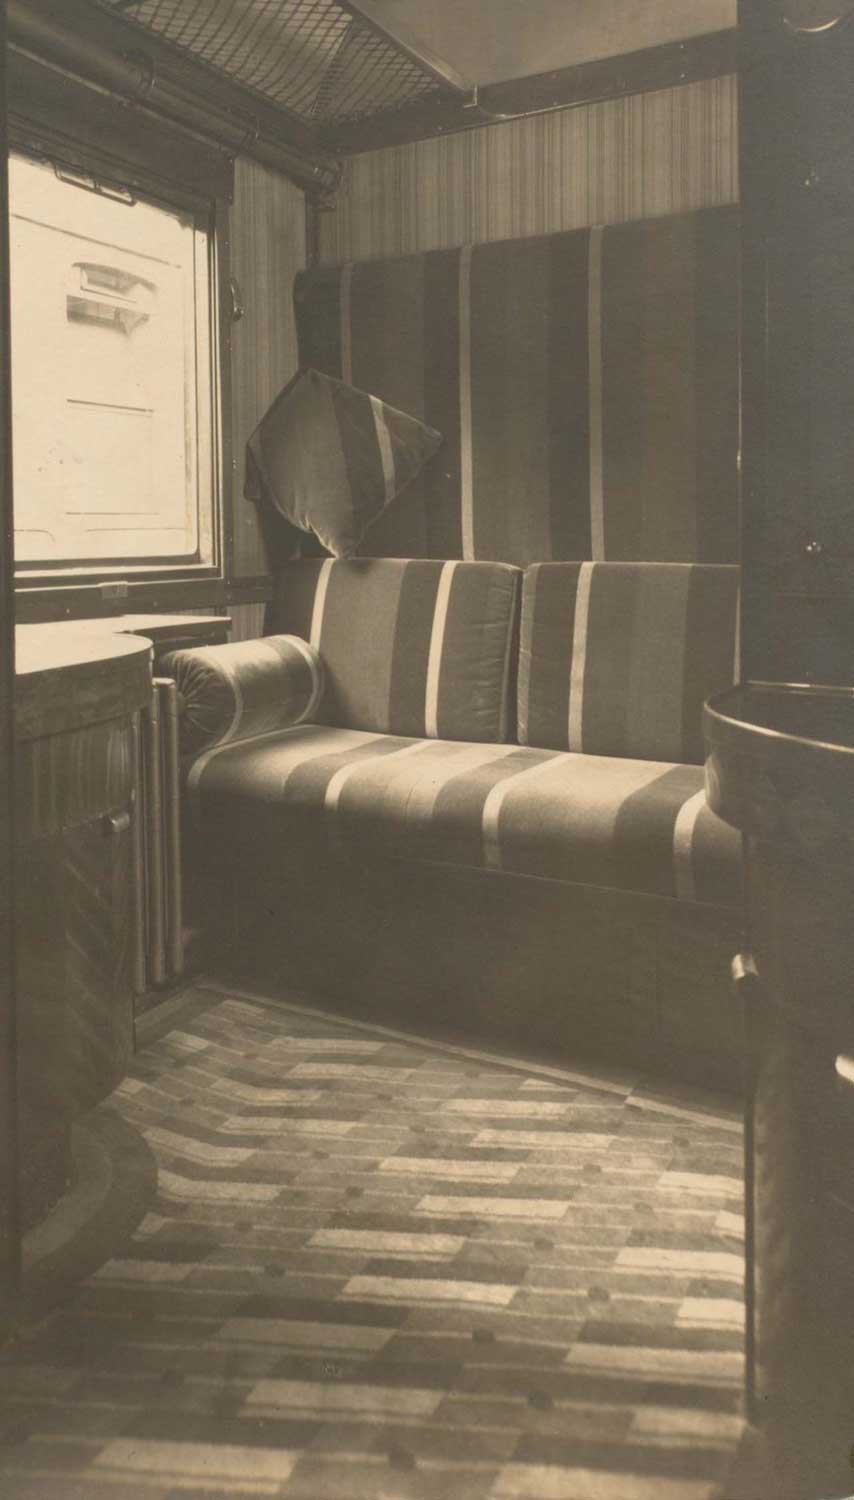 Foto, schwarz-weiß, innen: Sitzbank mit Stoffbezug aus breiten und schmalen Streifen.